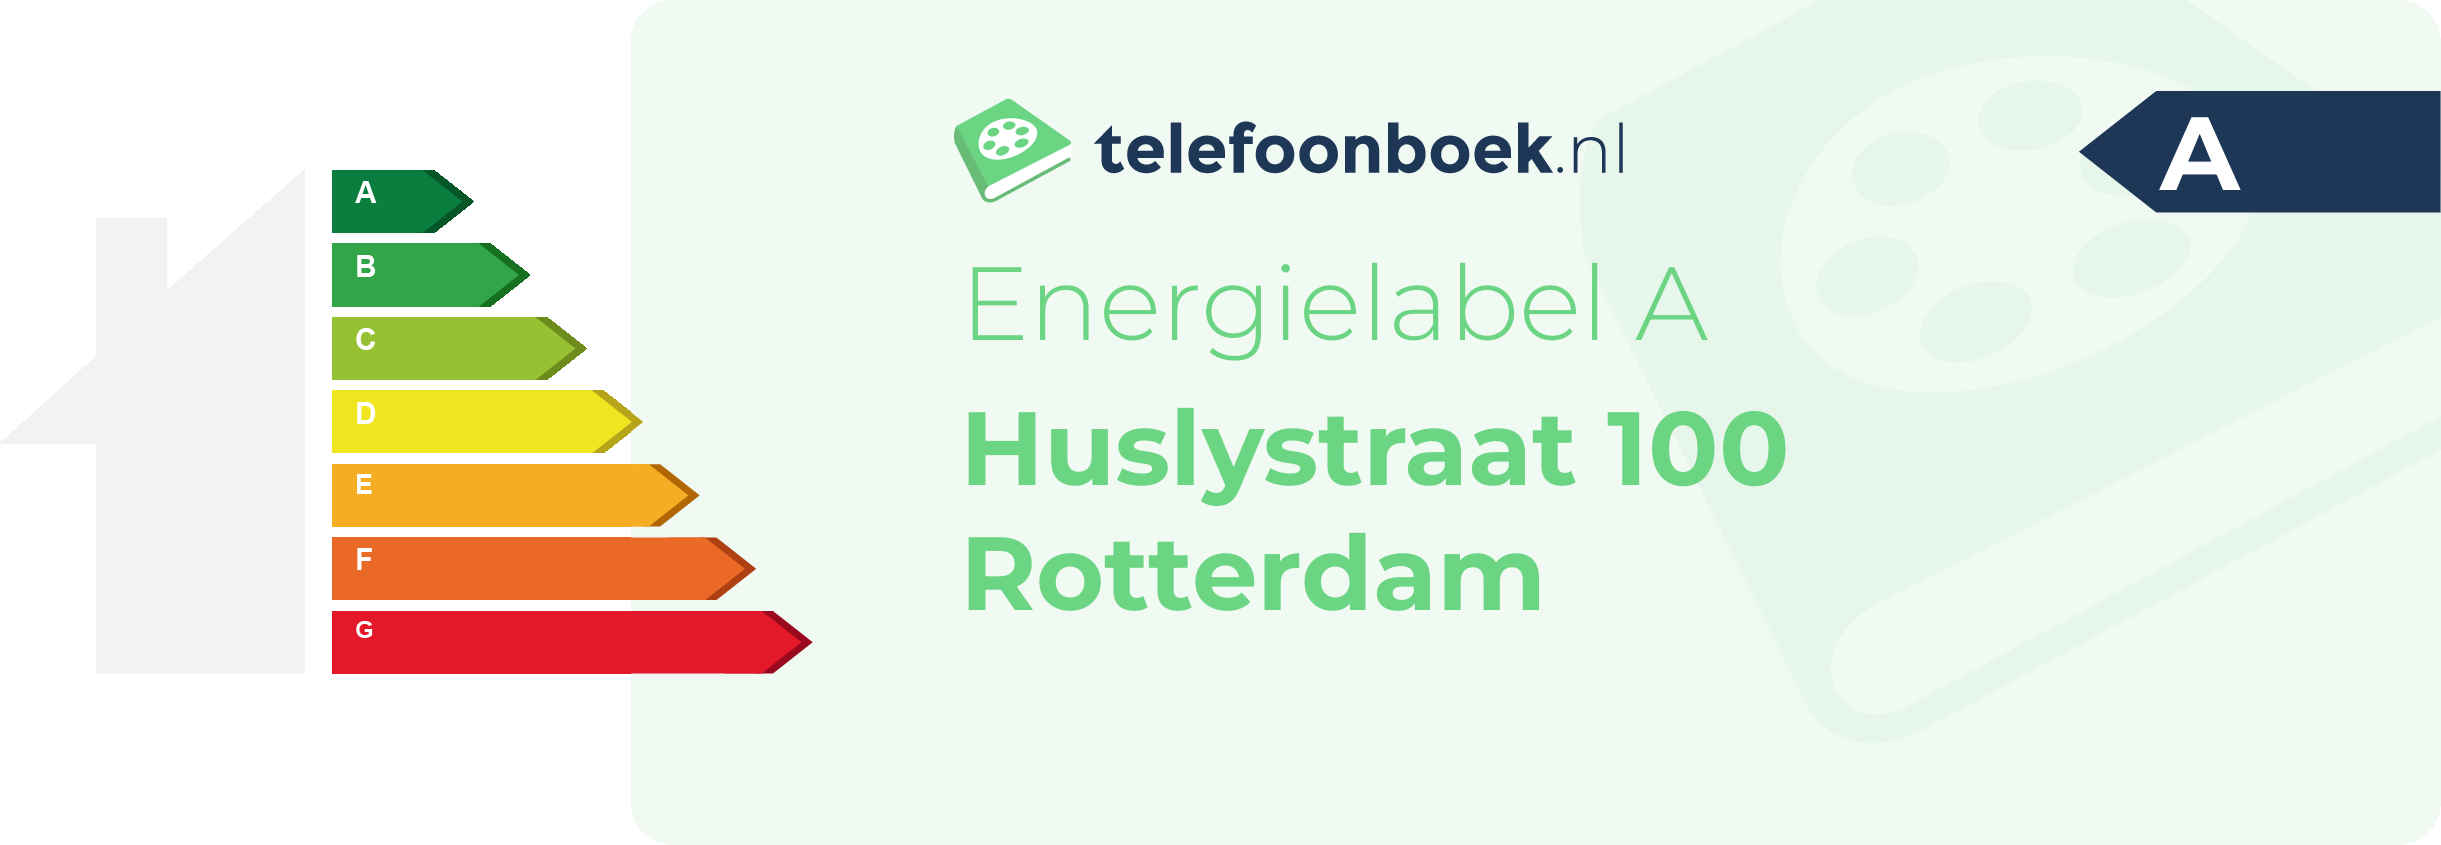 Energielabel Huslystraat 100 Rotterdam